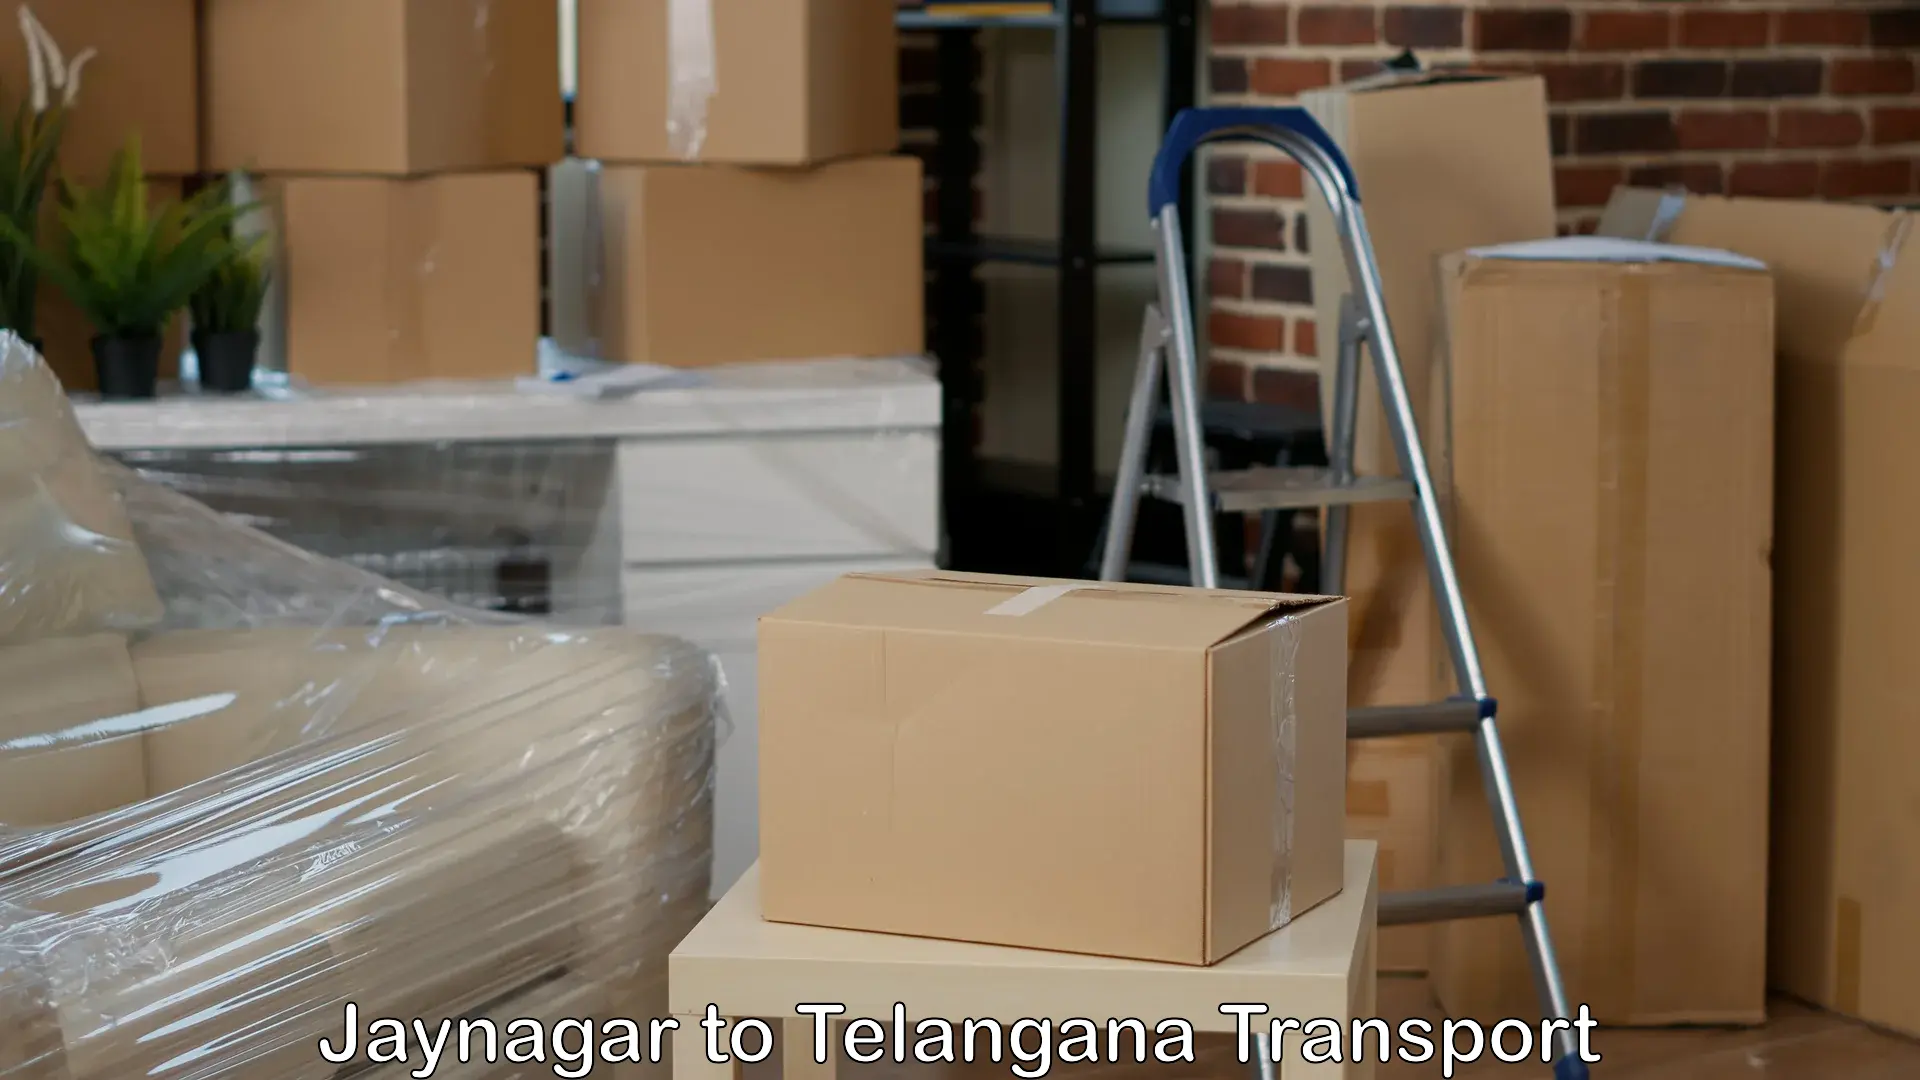 Cargo transportation services Jaynagar to Nalgonda